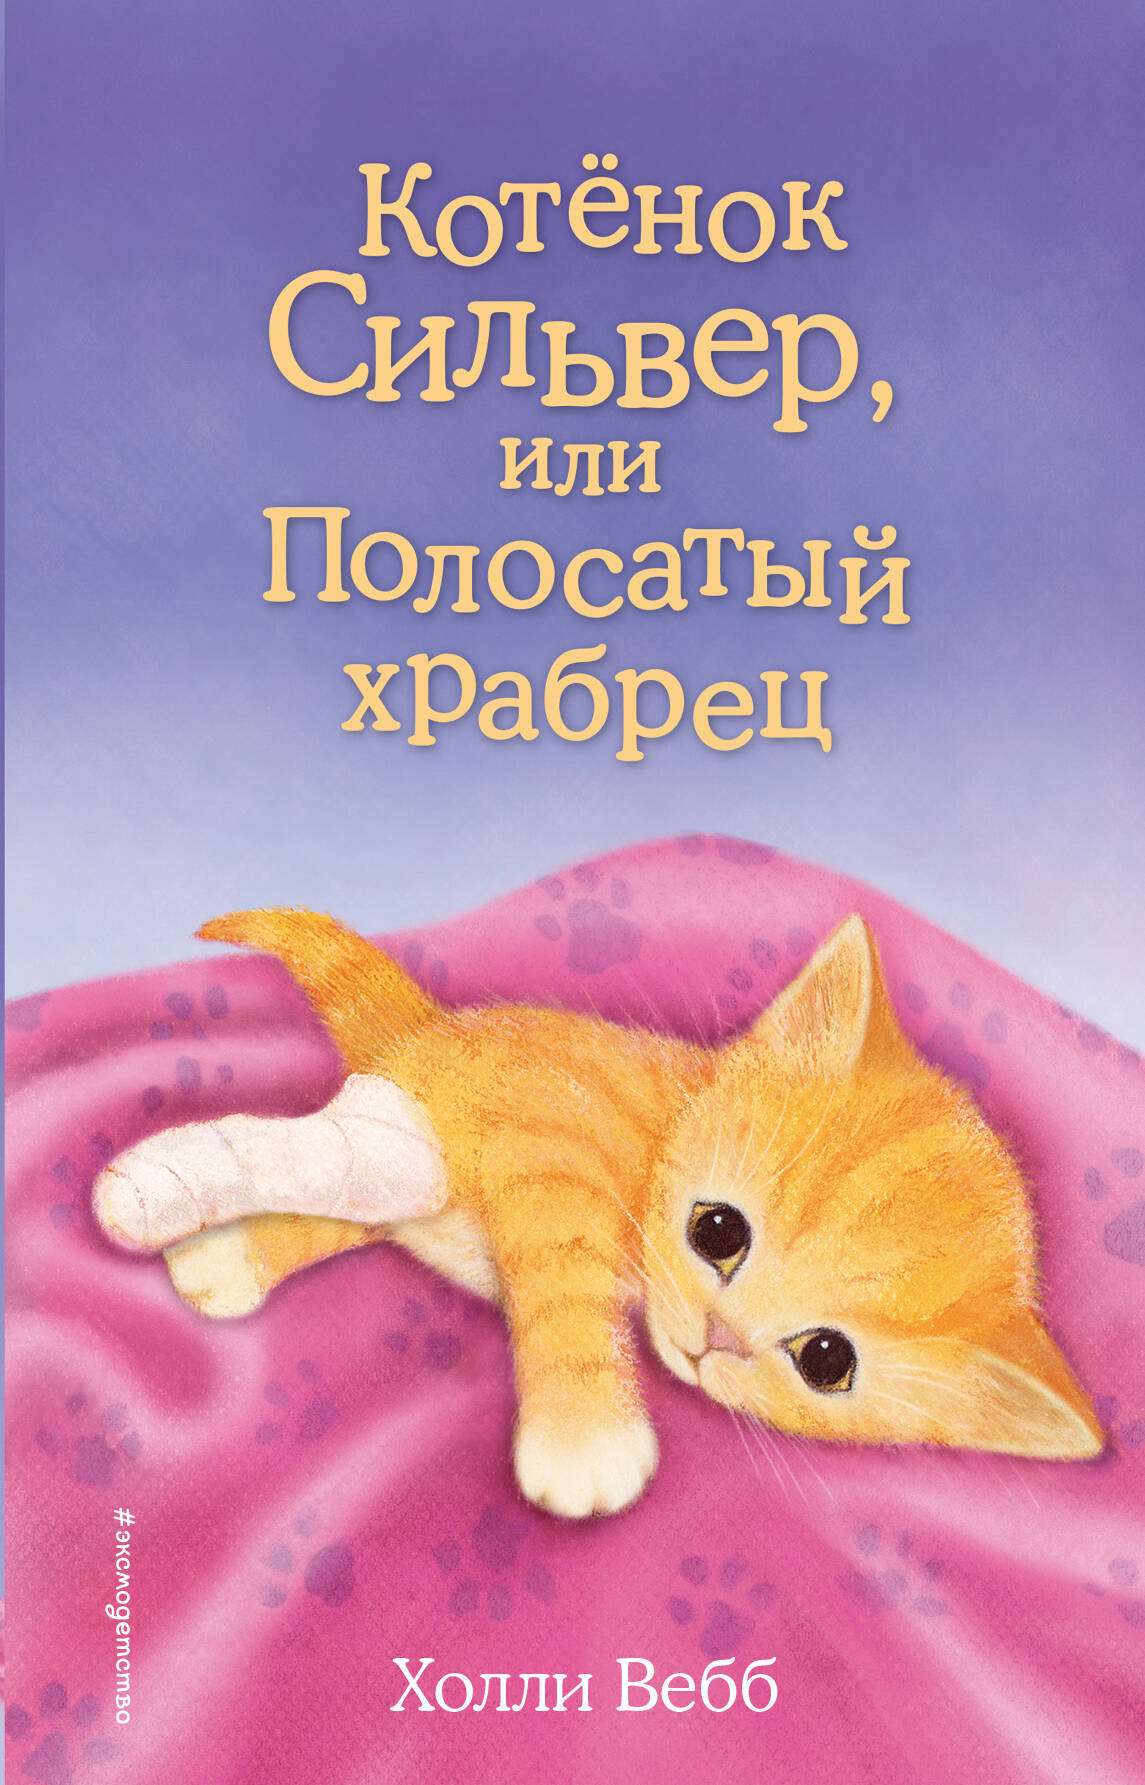 Котенок Сильвер, или Полосатый храбрец котёнок сильвер или полосатый храбрец выпуск 25 вебб х